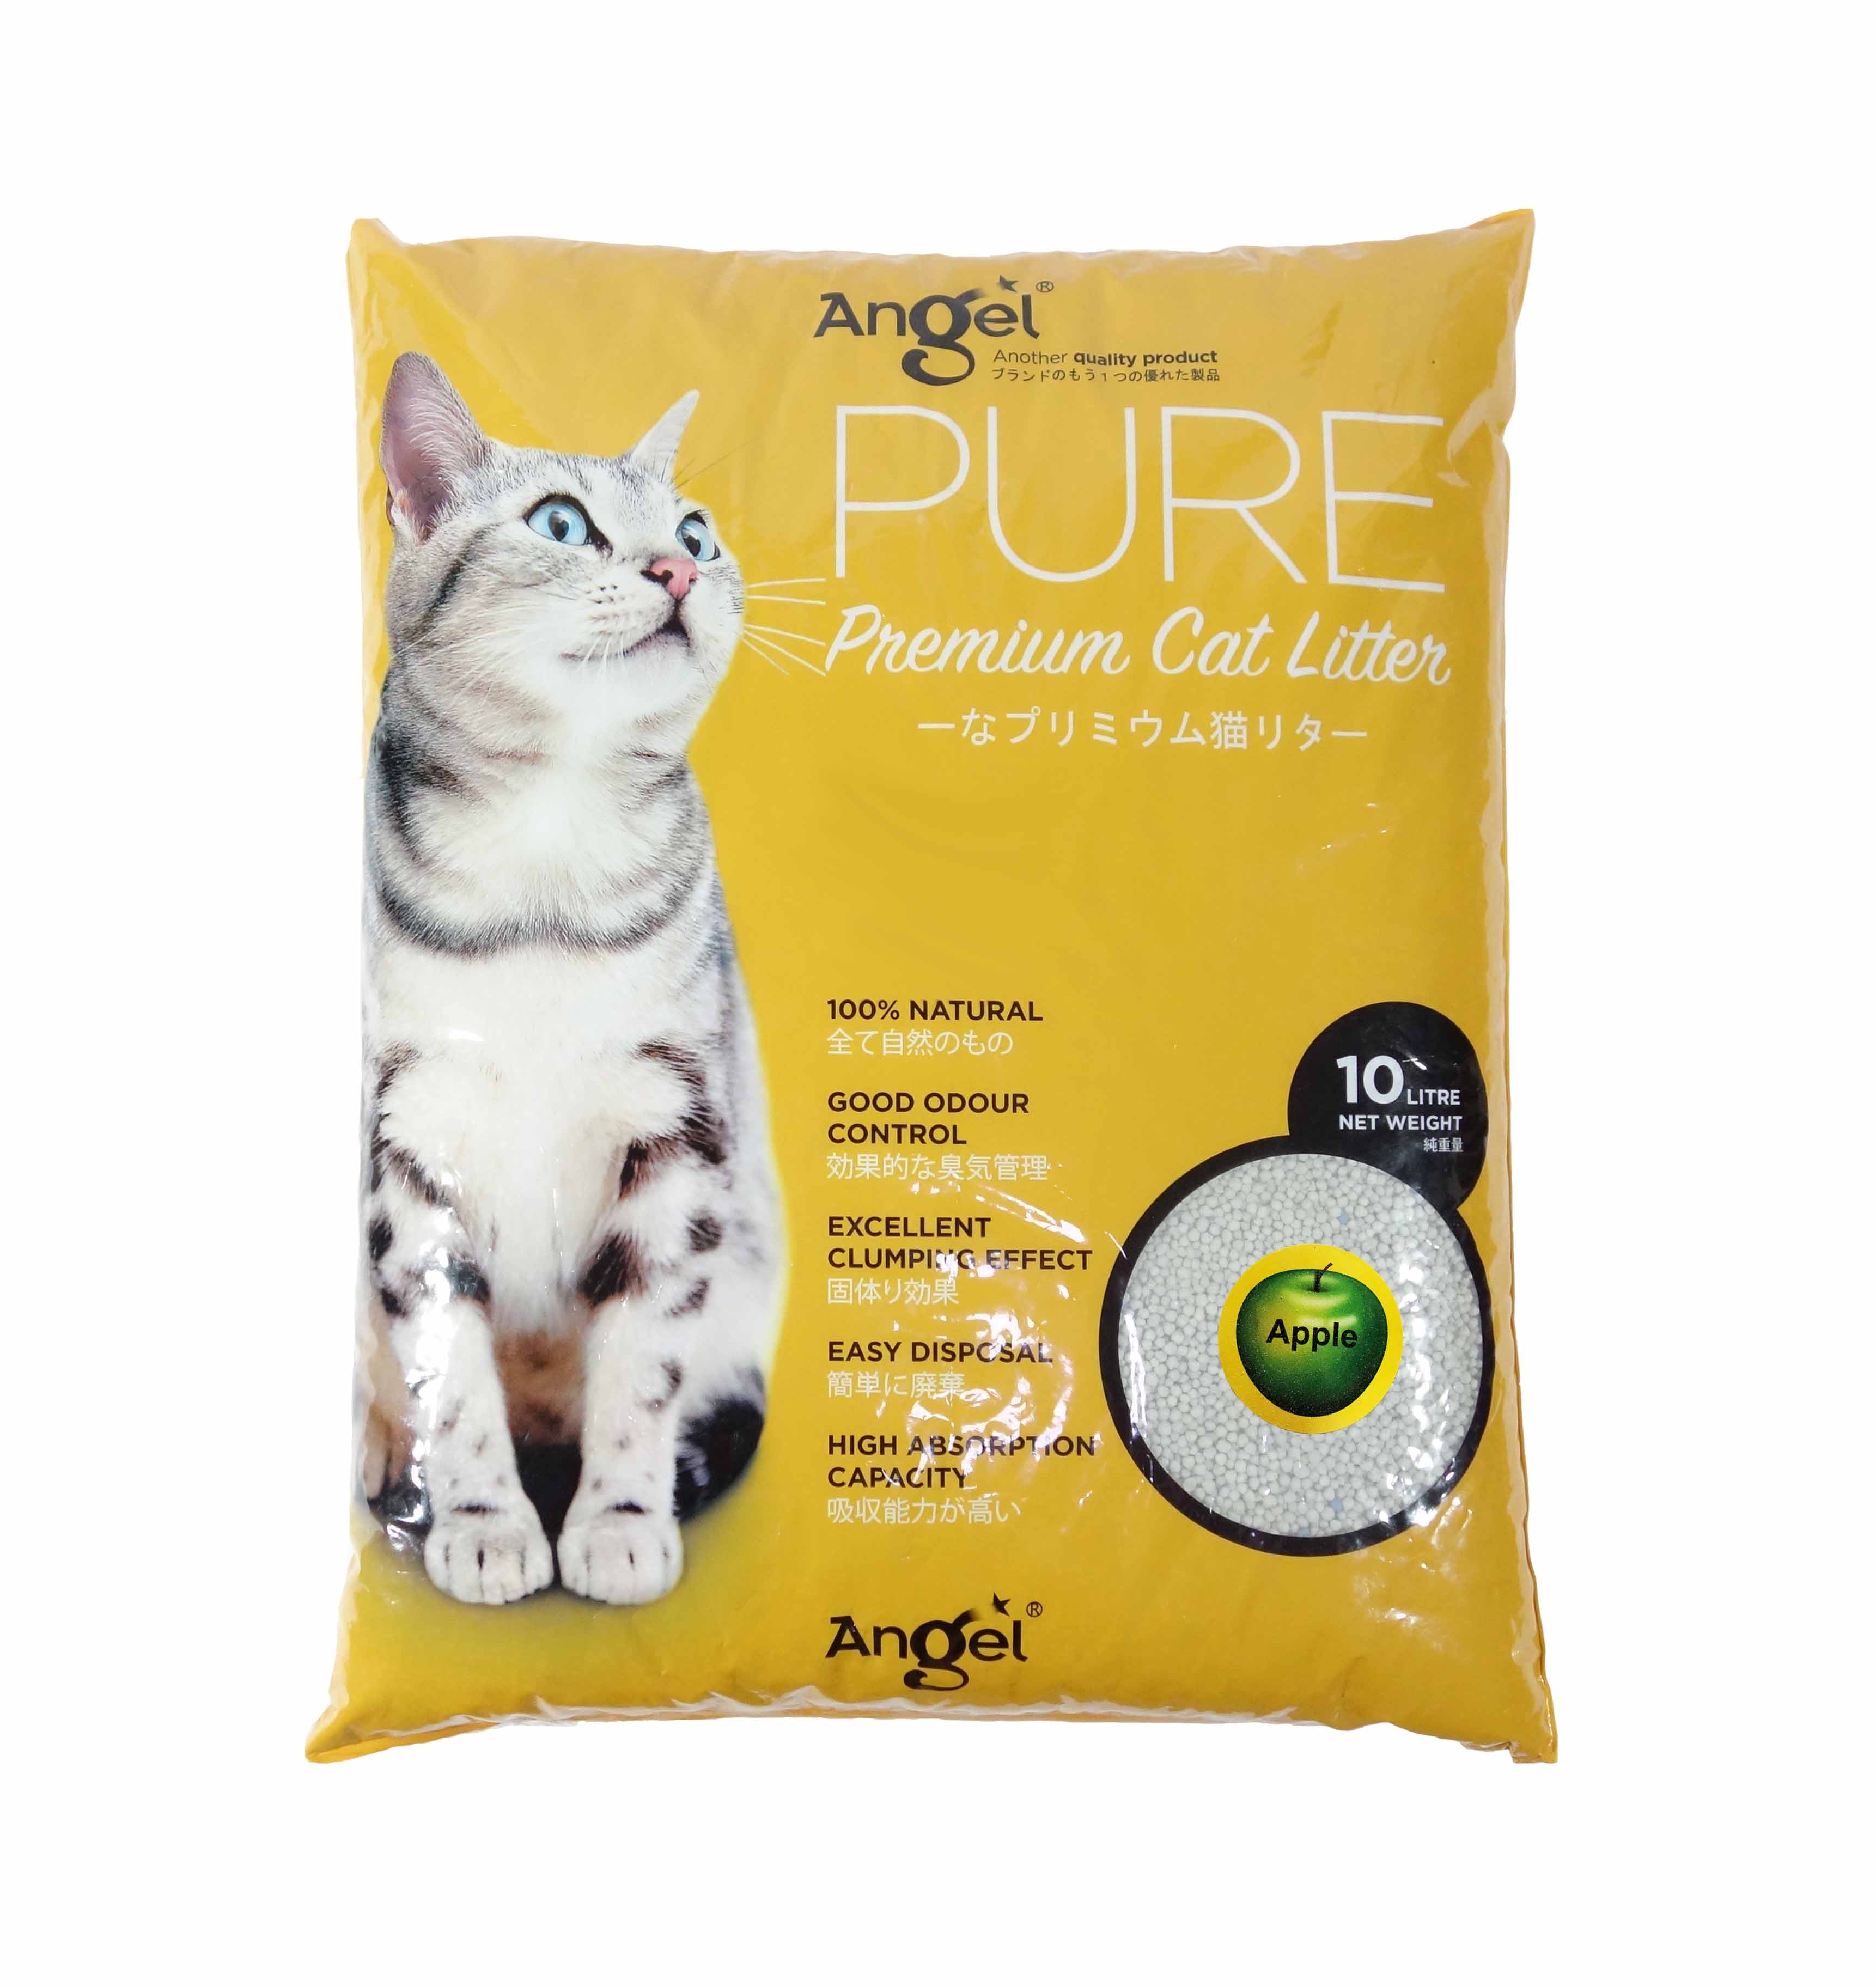 Angel Pure Premium Cat Litter 10L Apple Scented